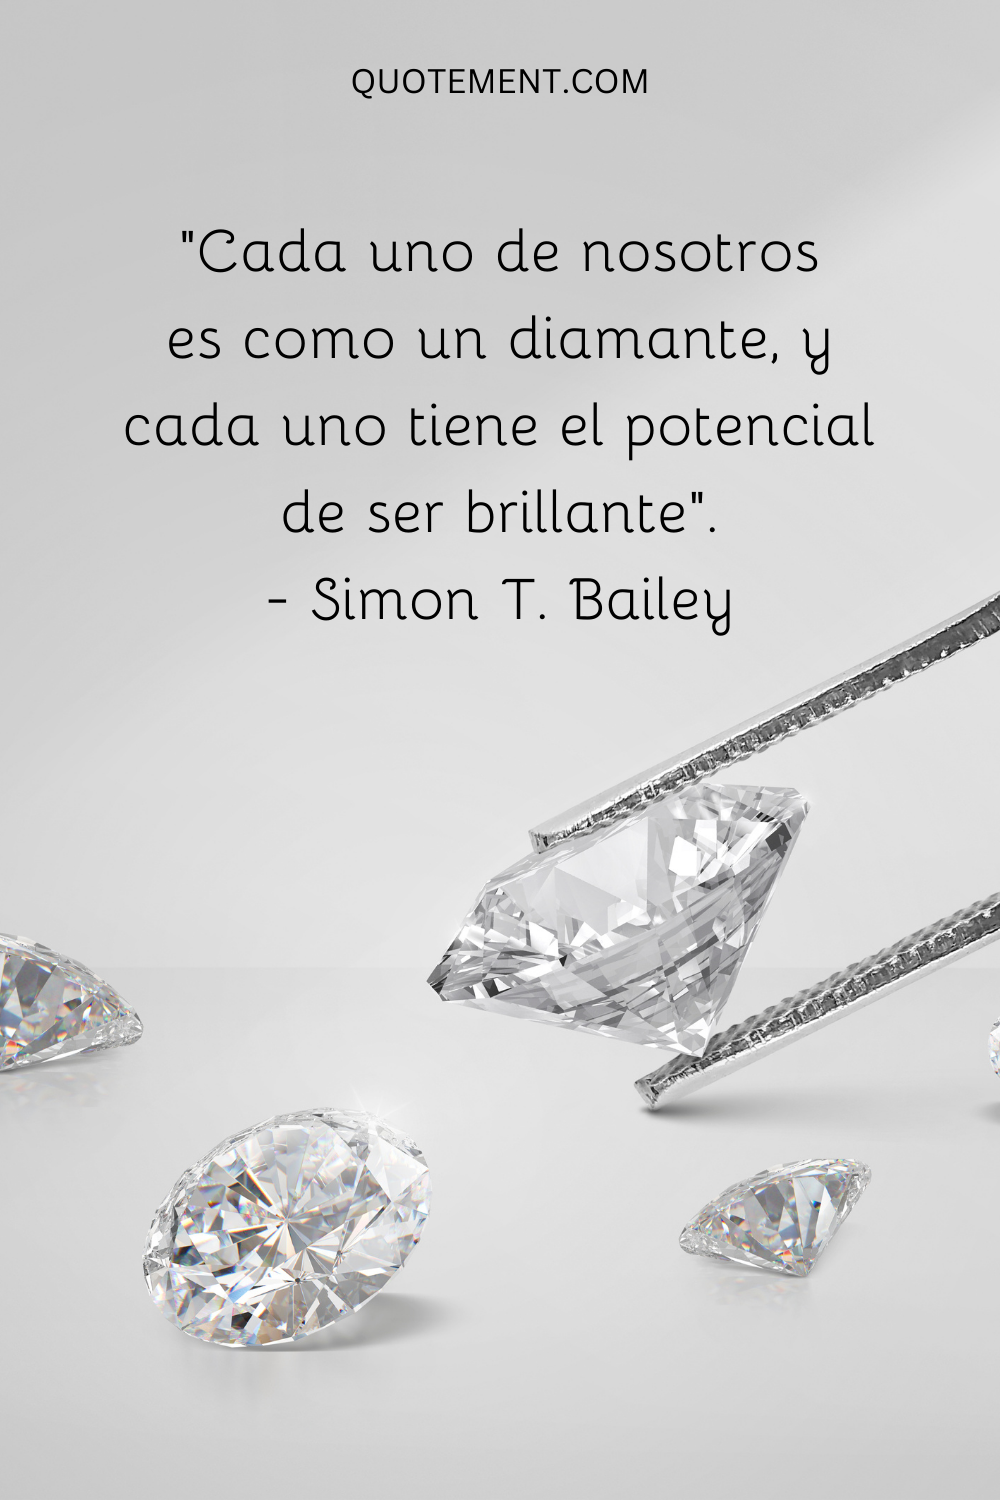 Cada uno de nosotros es como un diamante, y cada uno tiene el potencial de ser brillante.